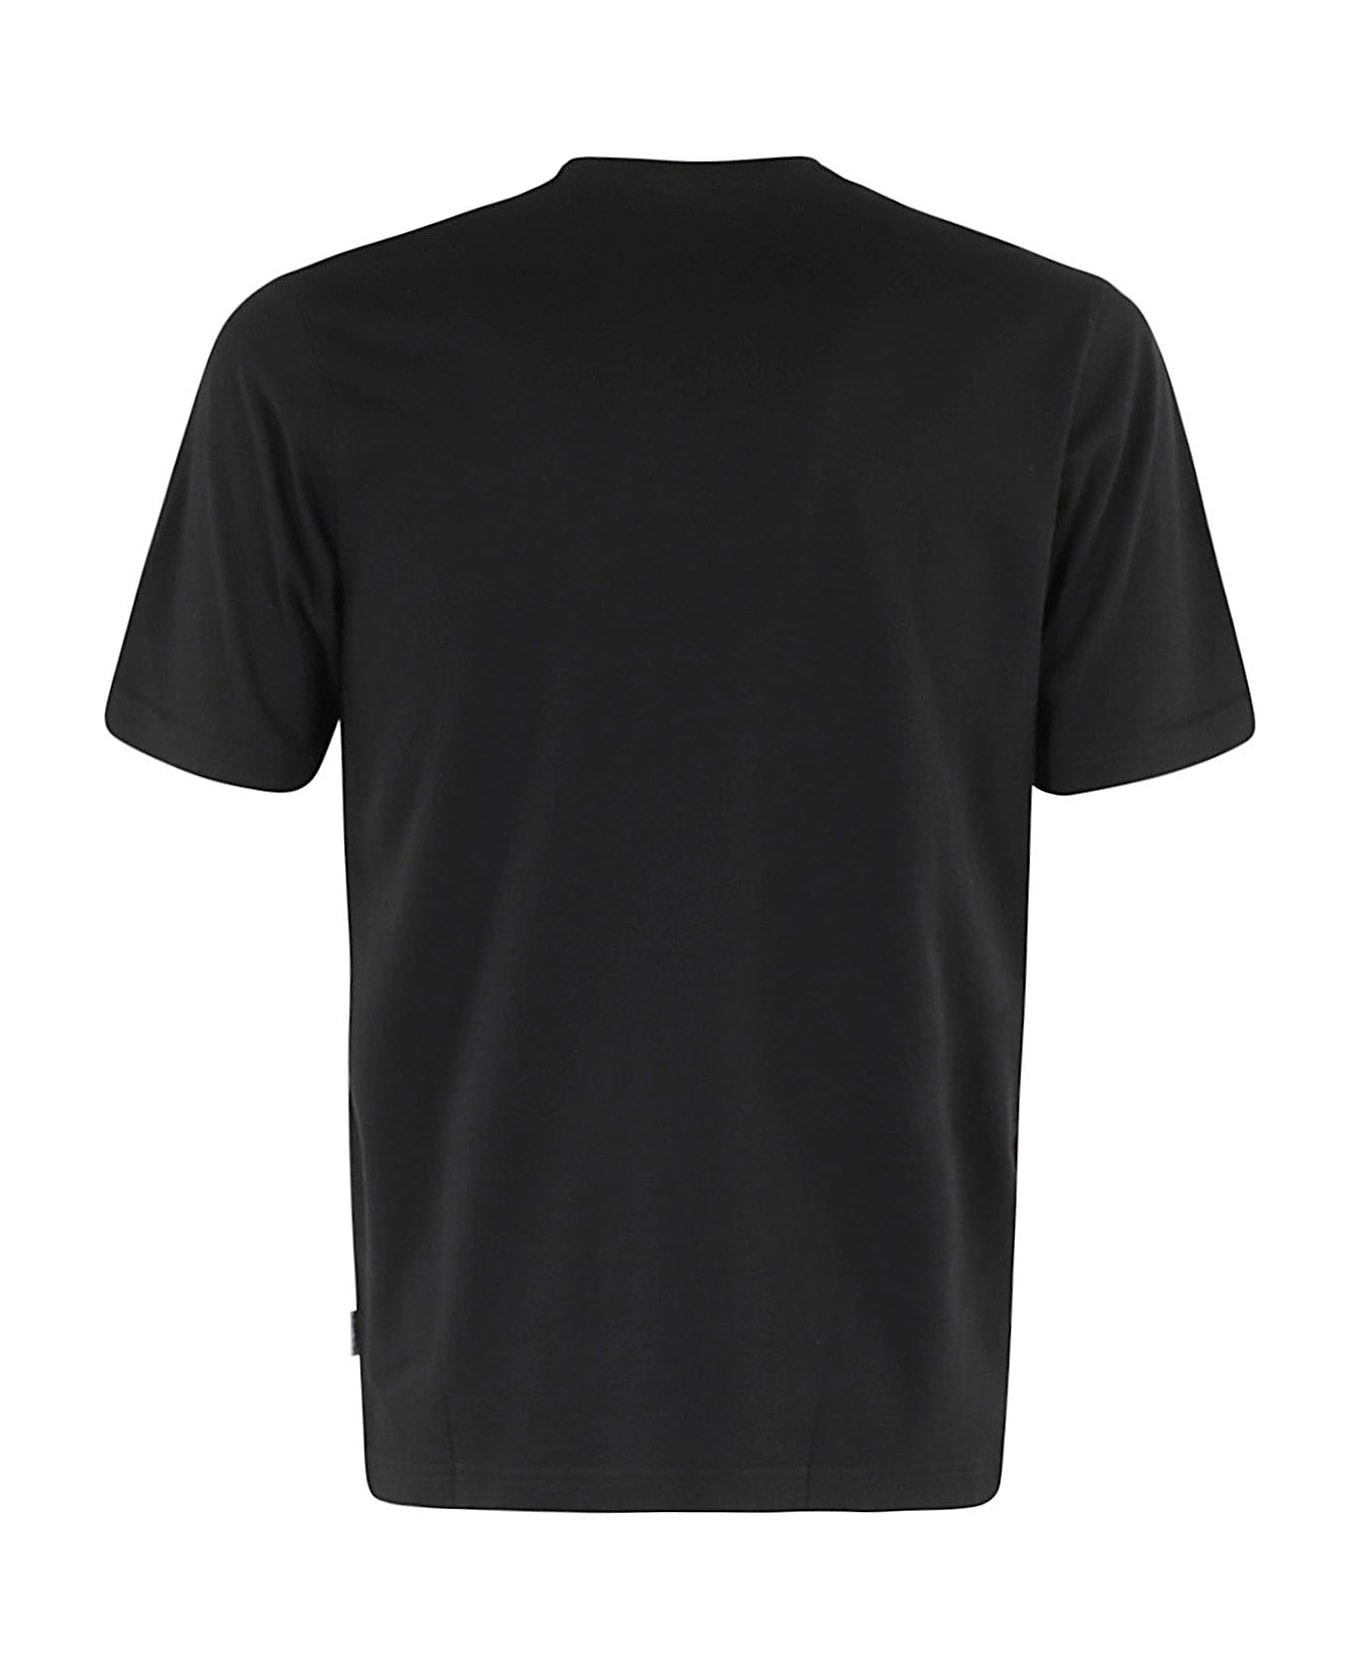 Aspesi T - Shirt Mod 3107 - Nero  シャツ